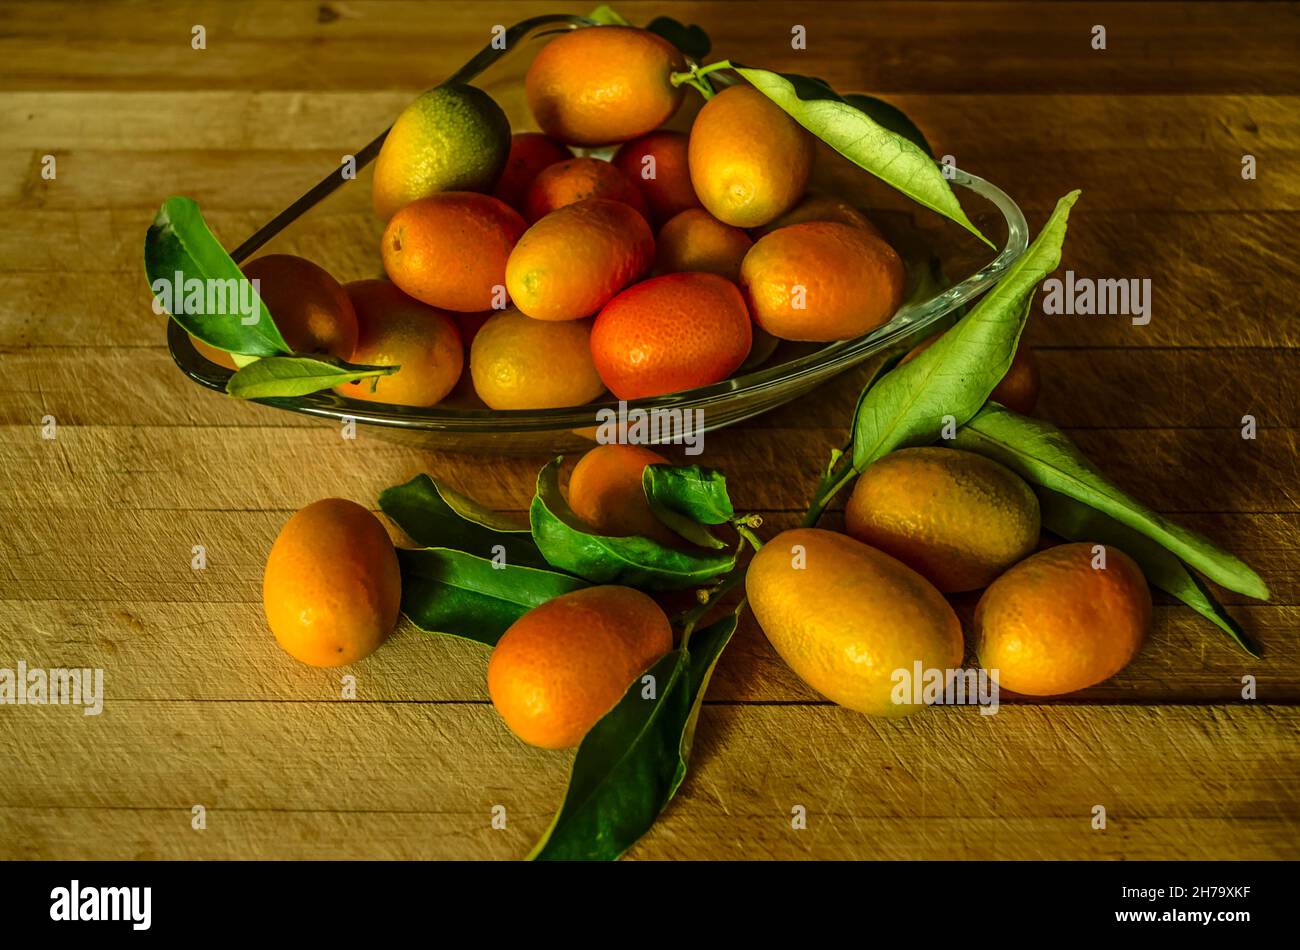 Kleine Glasplatte mit kleinen Kumquat-Orangen mit grün glänzenden Blättern und einer Gruppe von Kumquat-Orangen, die in der Nähe auf einem Holztisch liegen Stockfoto